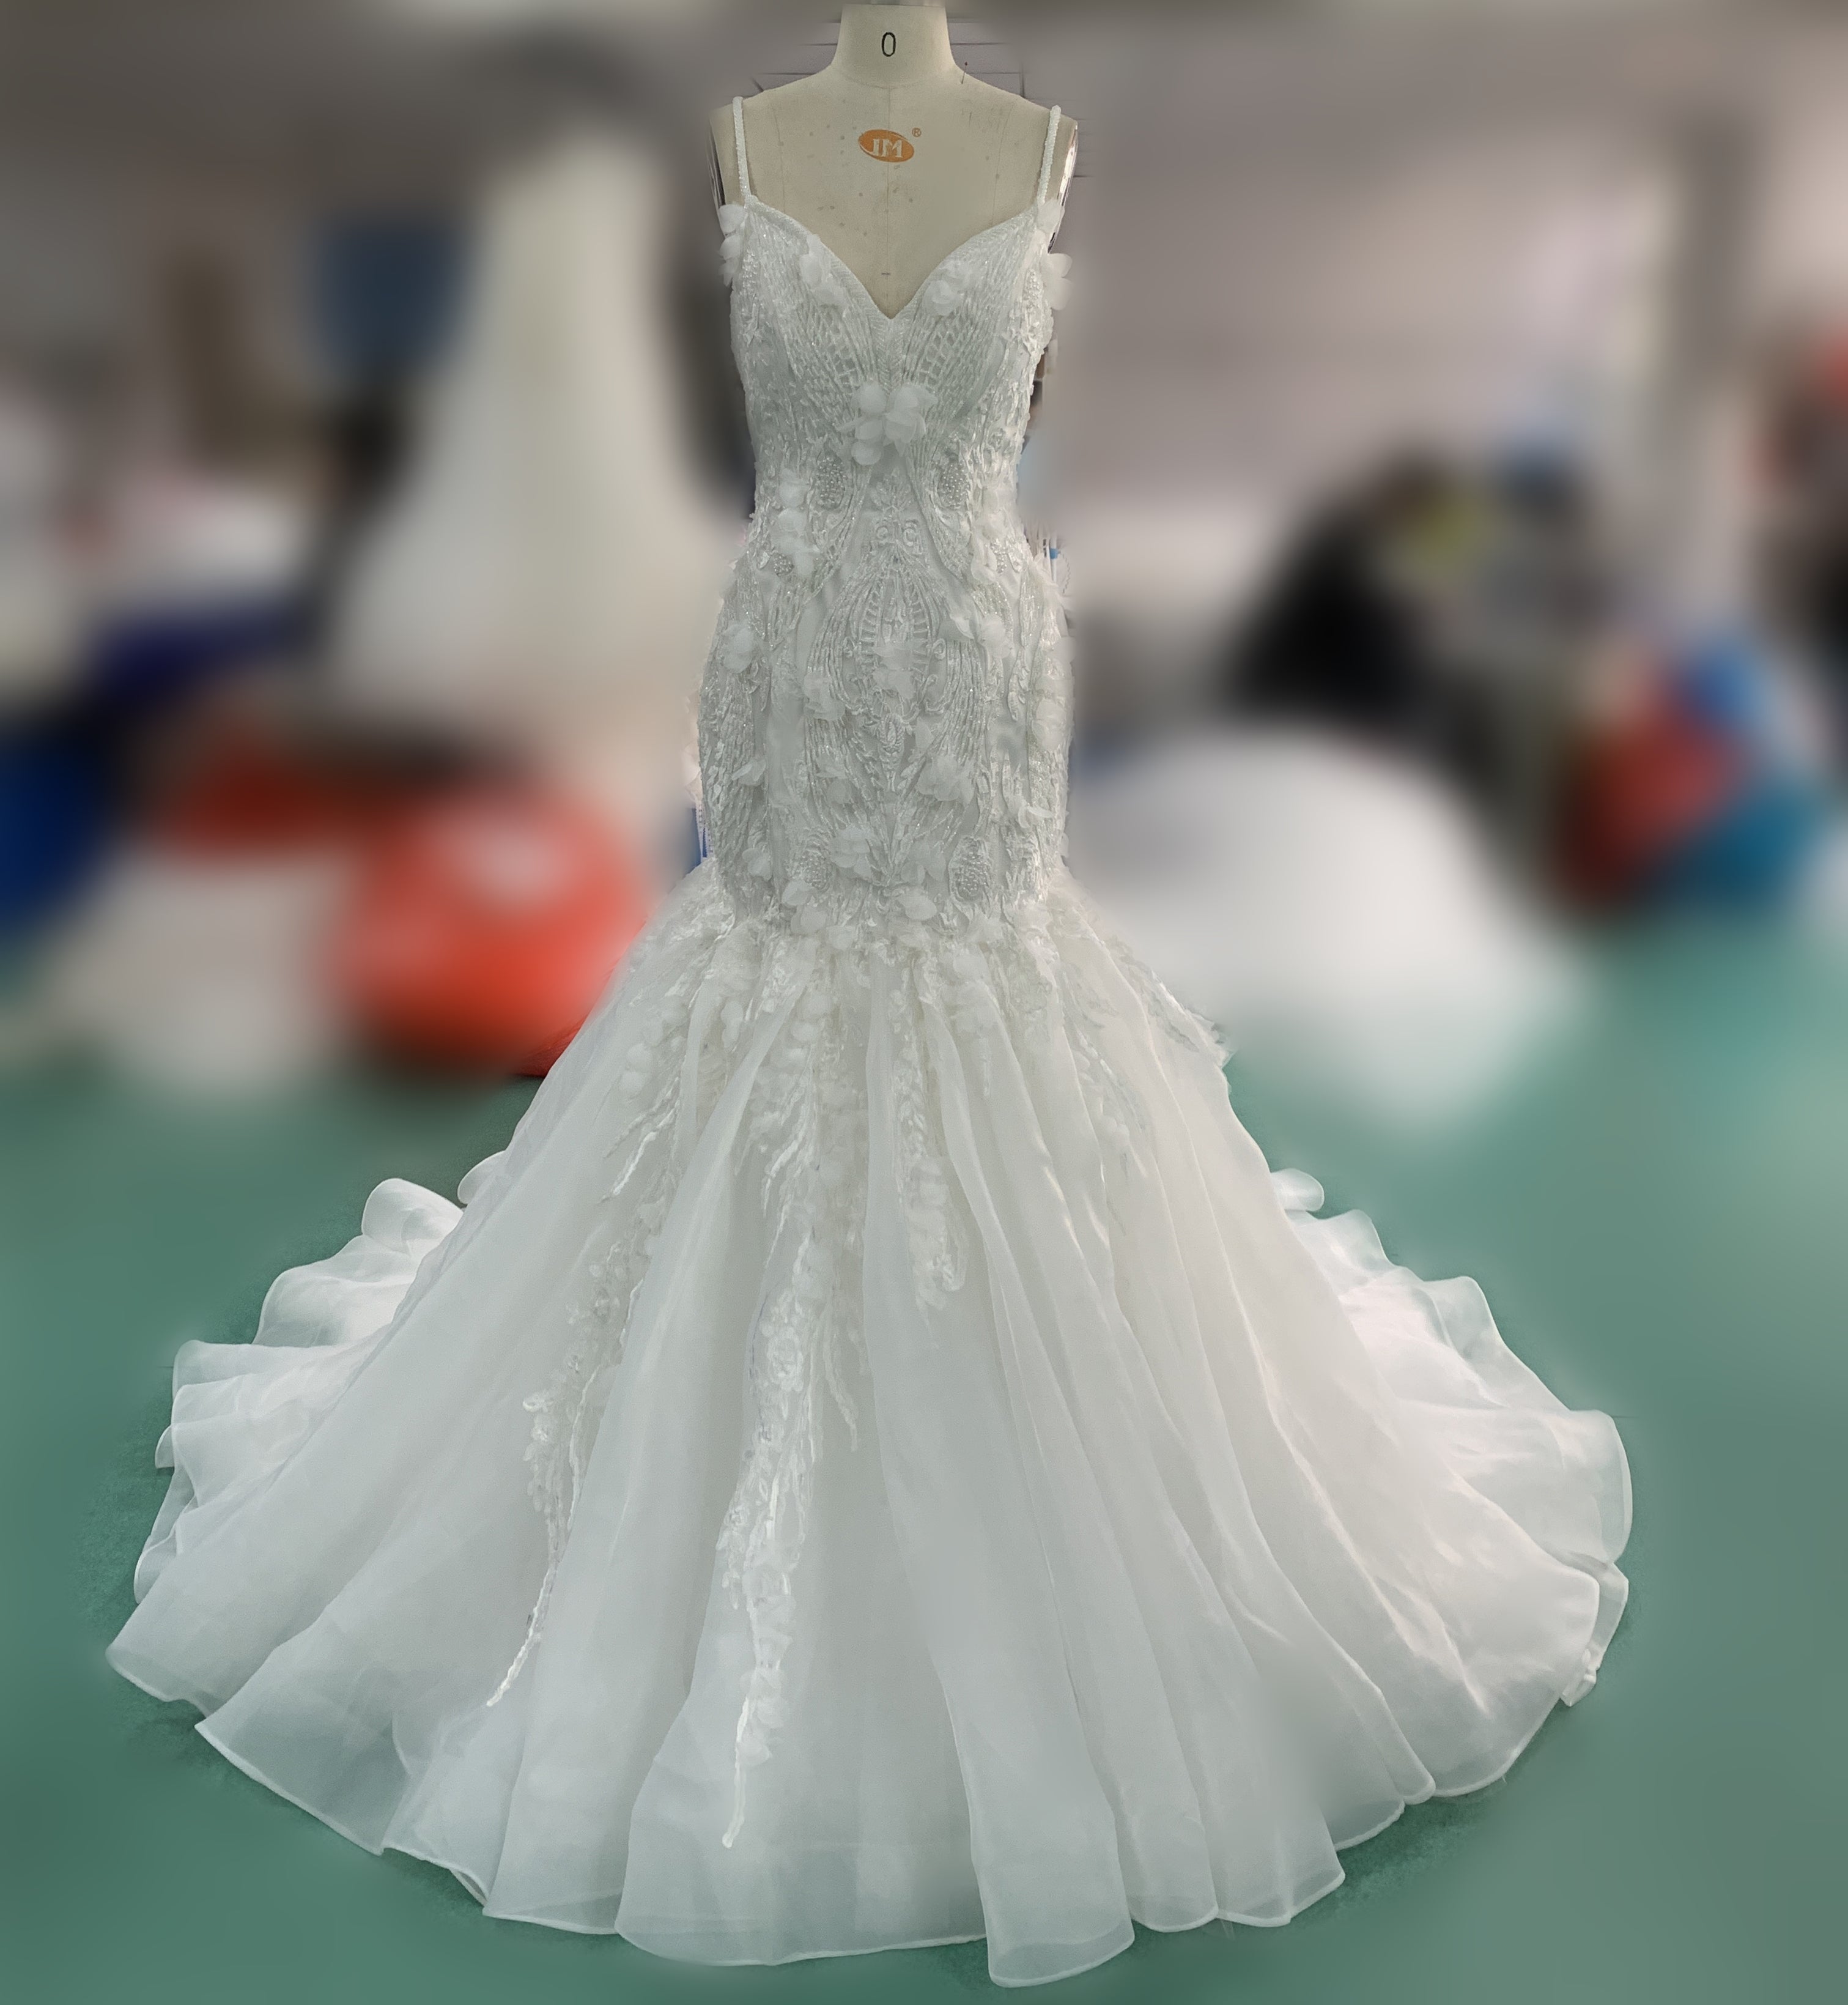 Spaghetti Long Mermaid Lace Organza Wedding Dresses, 2020 Wedding Dresses, Popular Bridal Gown